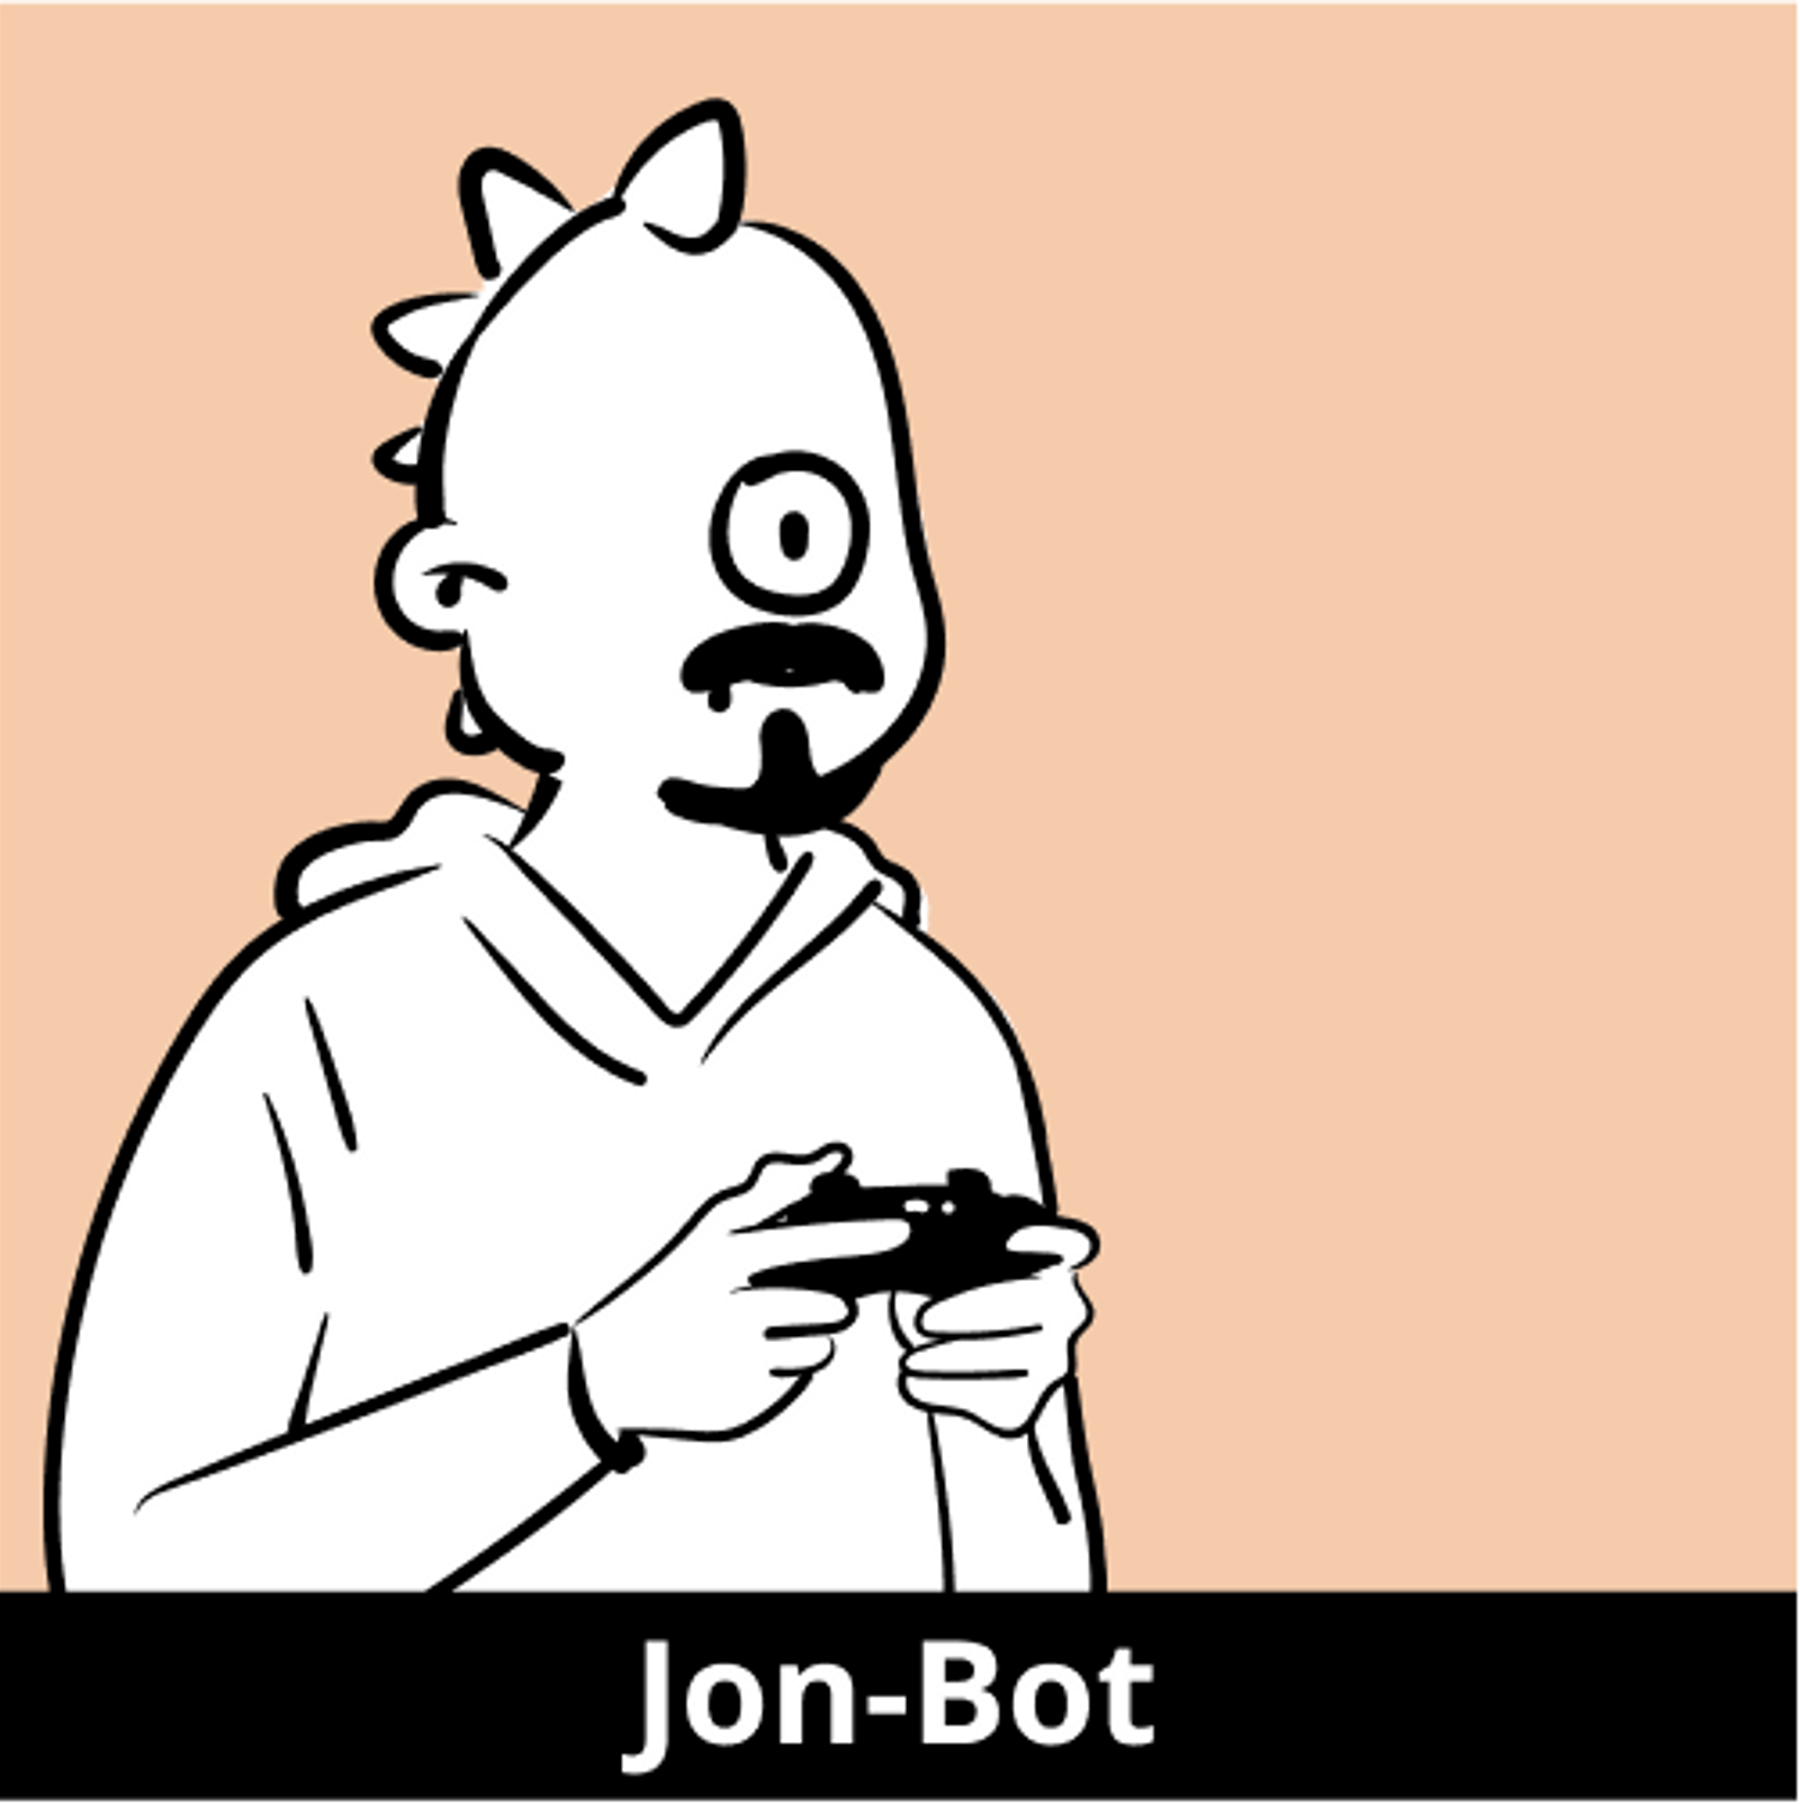 Jon-Bot